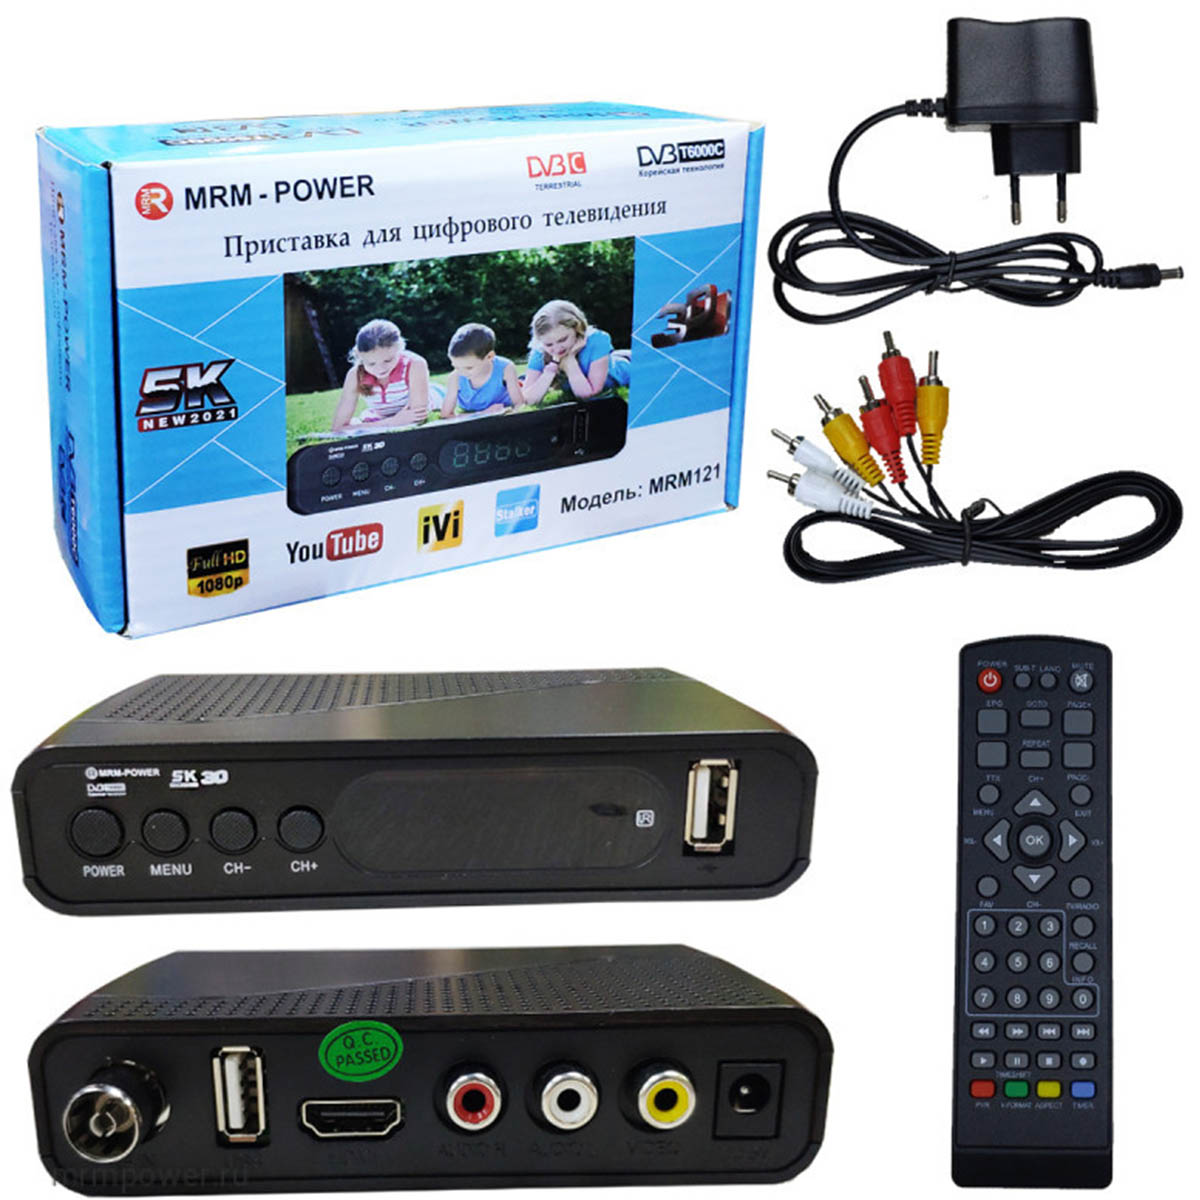 Цифровой эфирный приемник, ТВ приставка MRM POWER MR121, DVB-T2, цвет черный